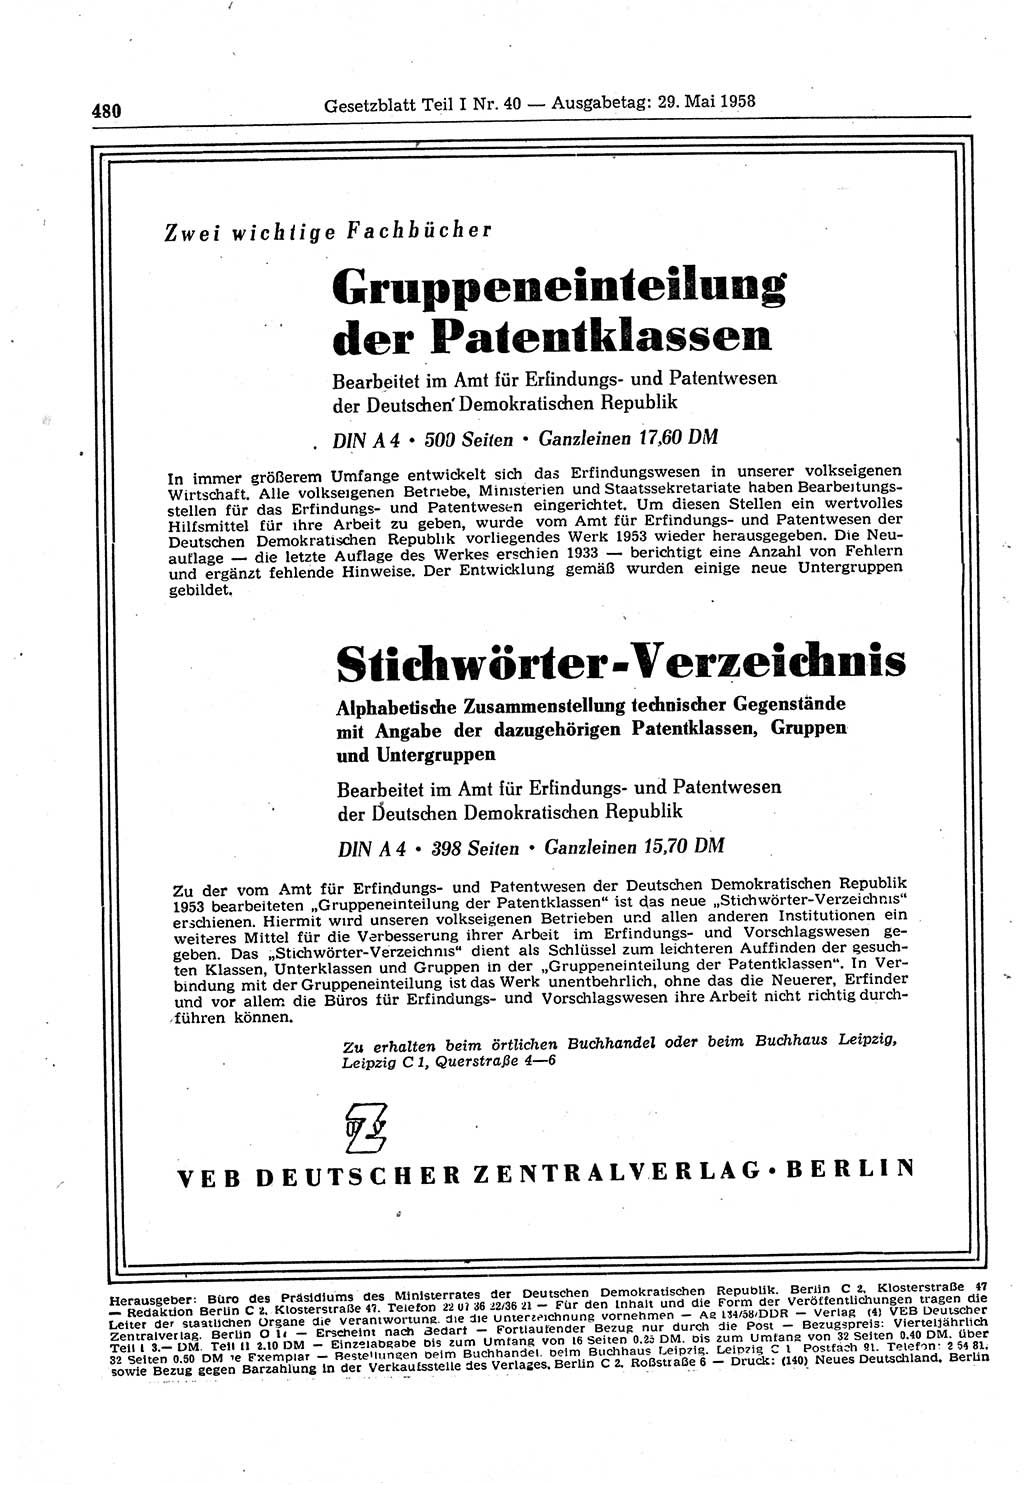 Gesetzblatt (GBl.) der Deutschen Demokratischen Republik (DDR) Teil â… 1958, Seite 480 (GBl. DDR â… 1958, S. 480)